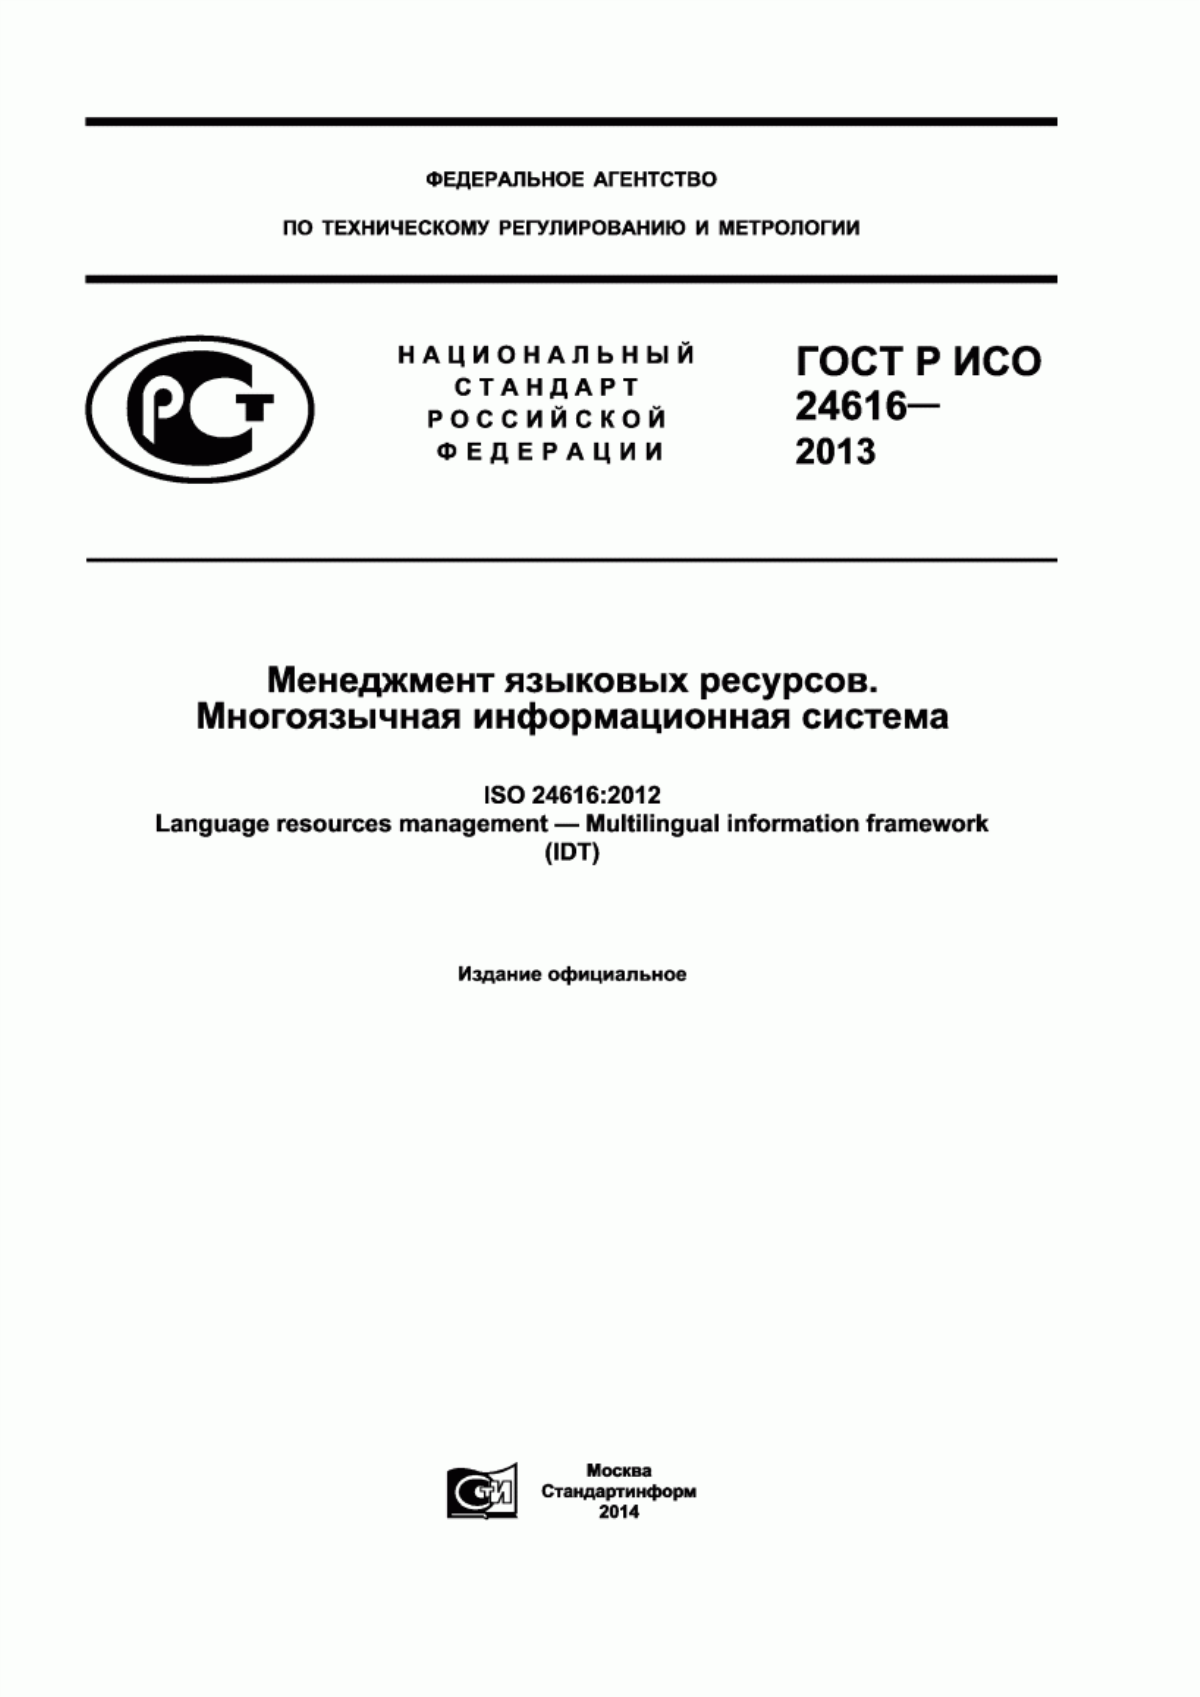 ГОСТ Р ИСО 24616-2013 Менеджмент языковых ресурсов. Многоязычная информационная система